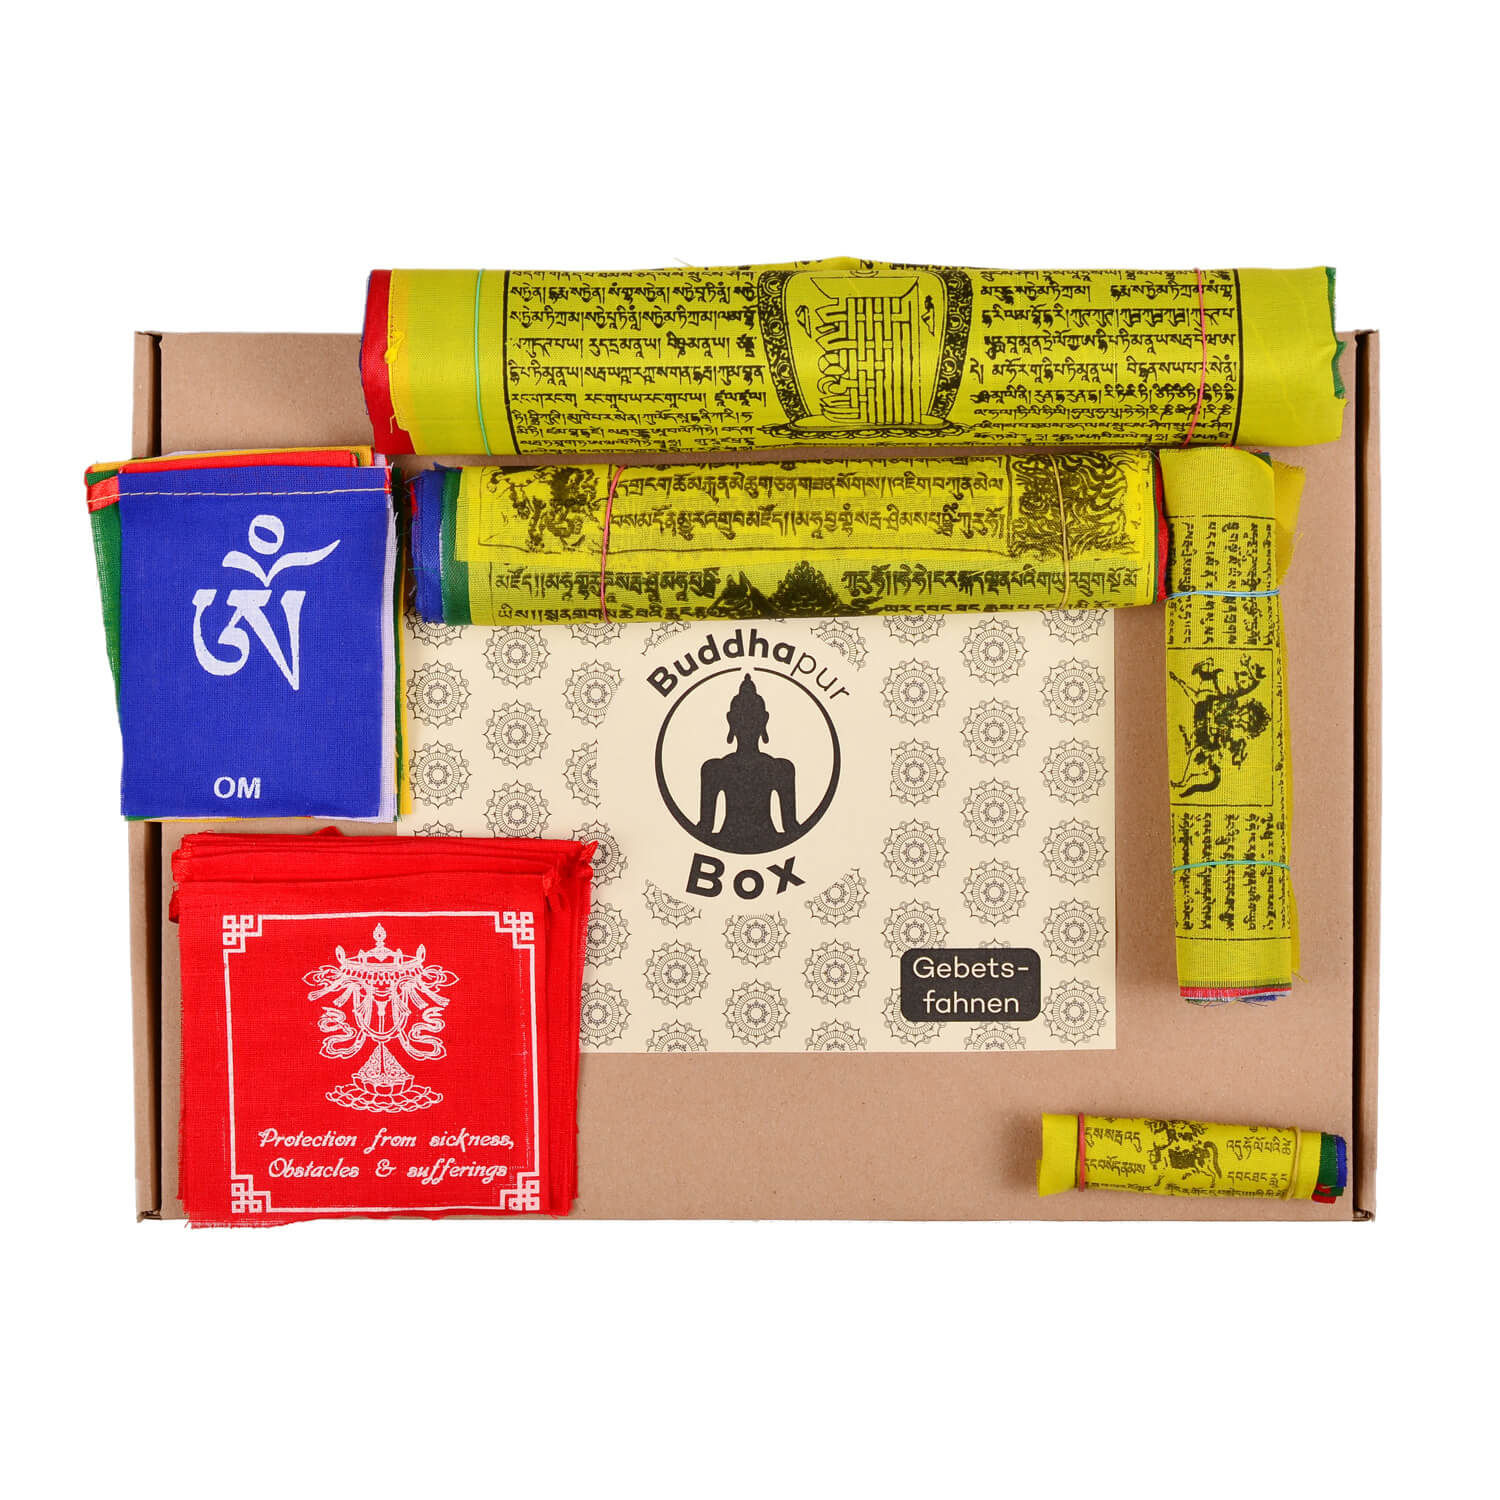 Buddhpur Box Gebetsfahnen: Inhalt auf Verpackung